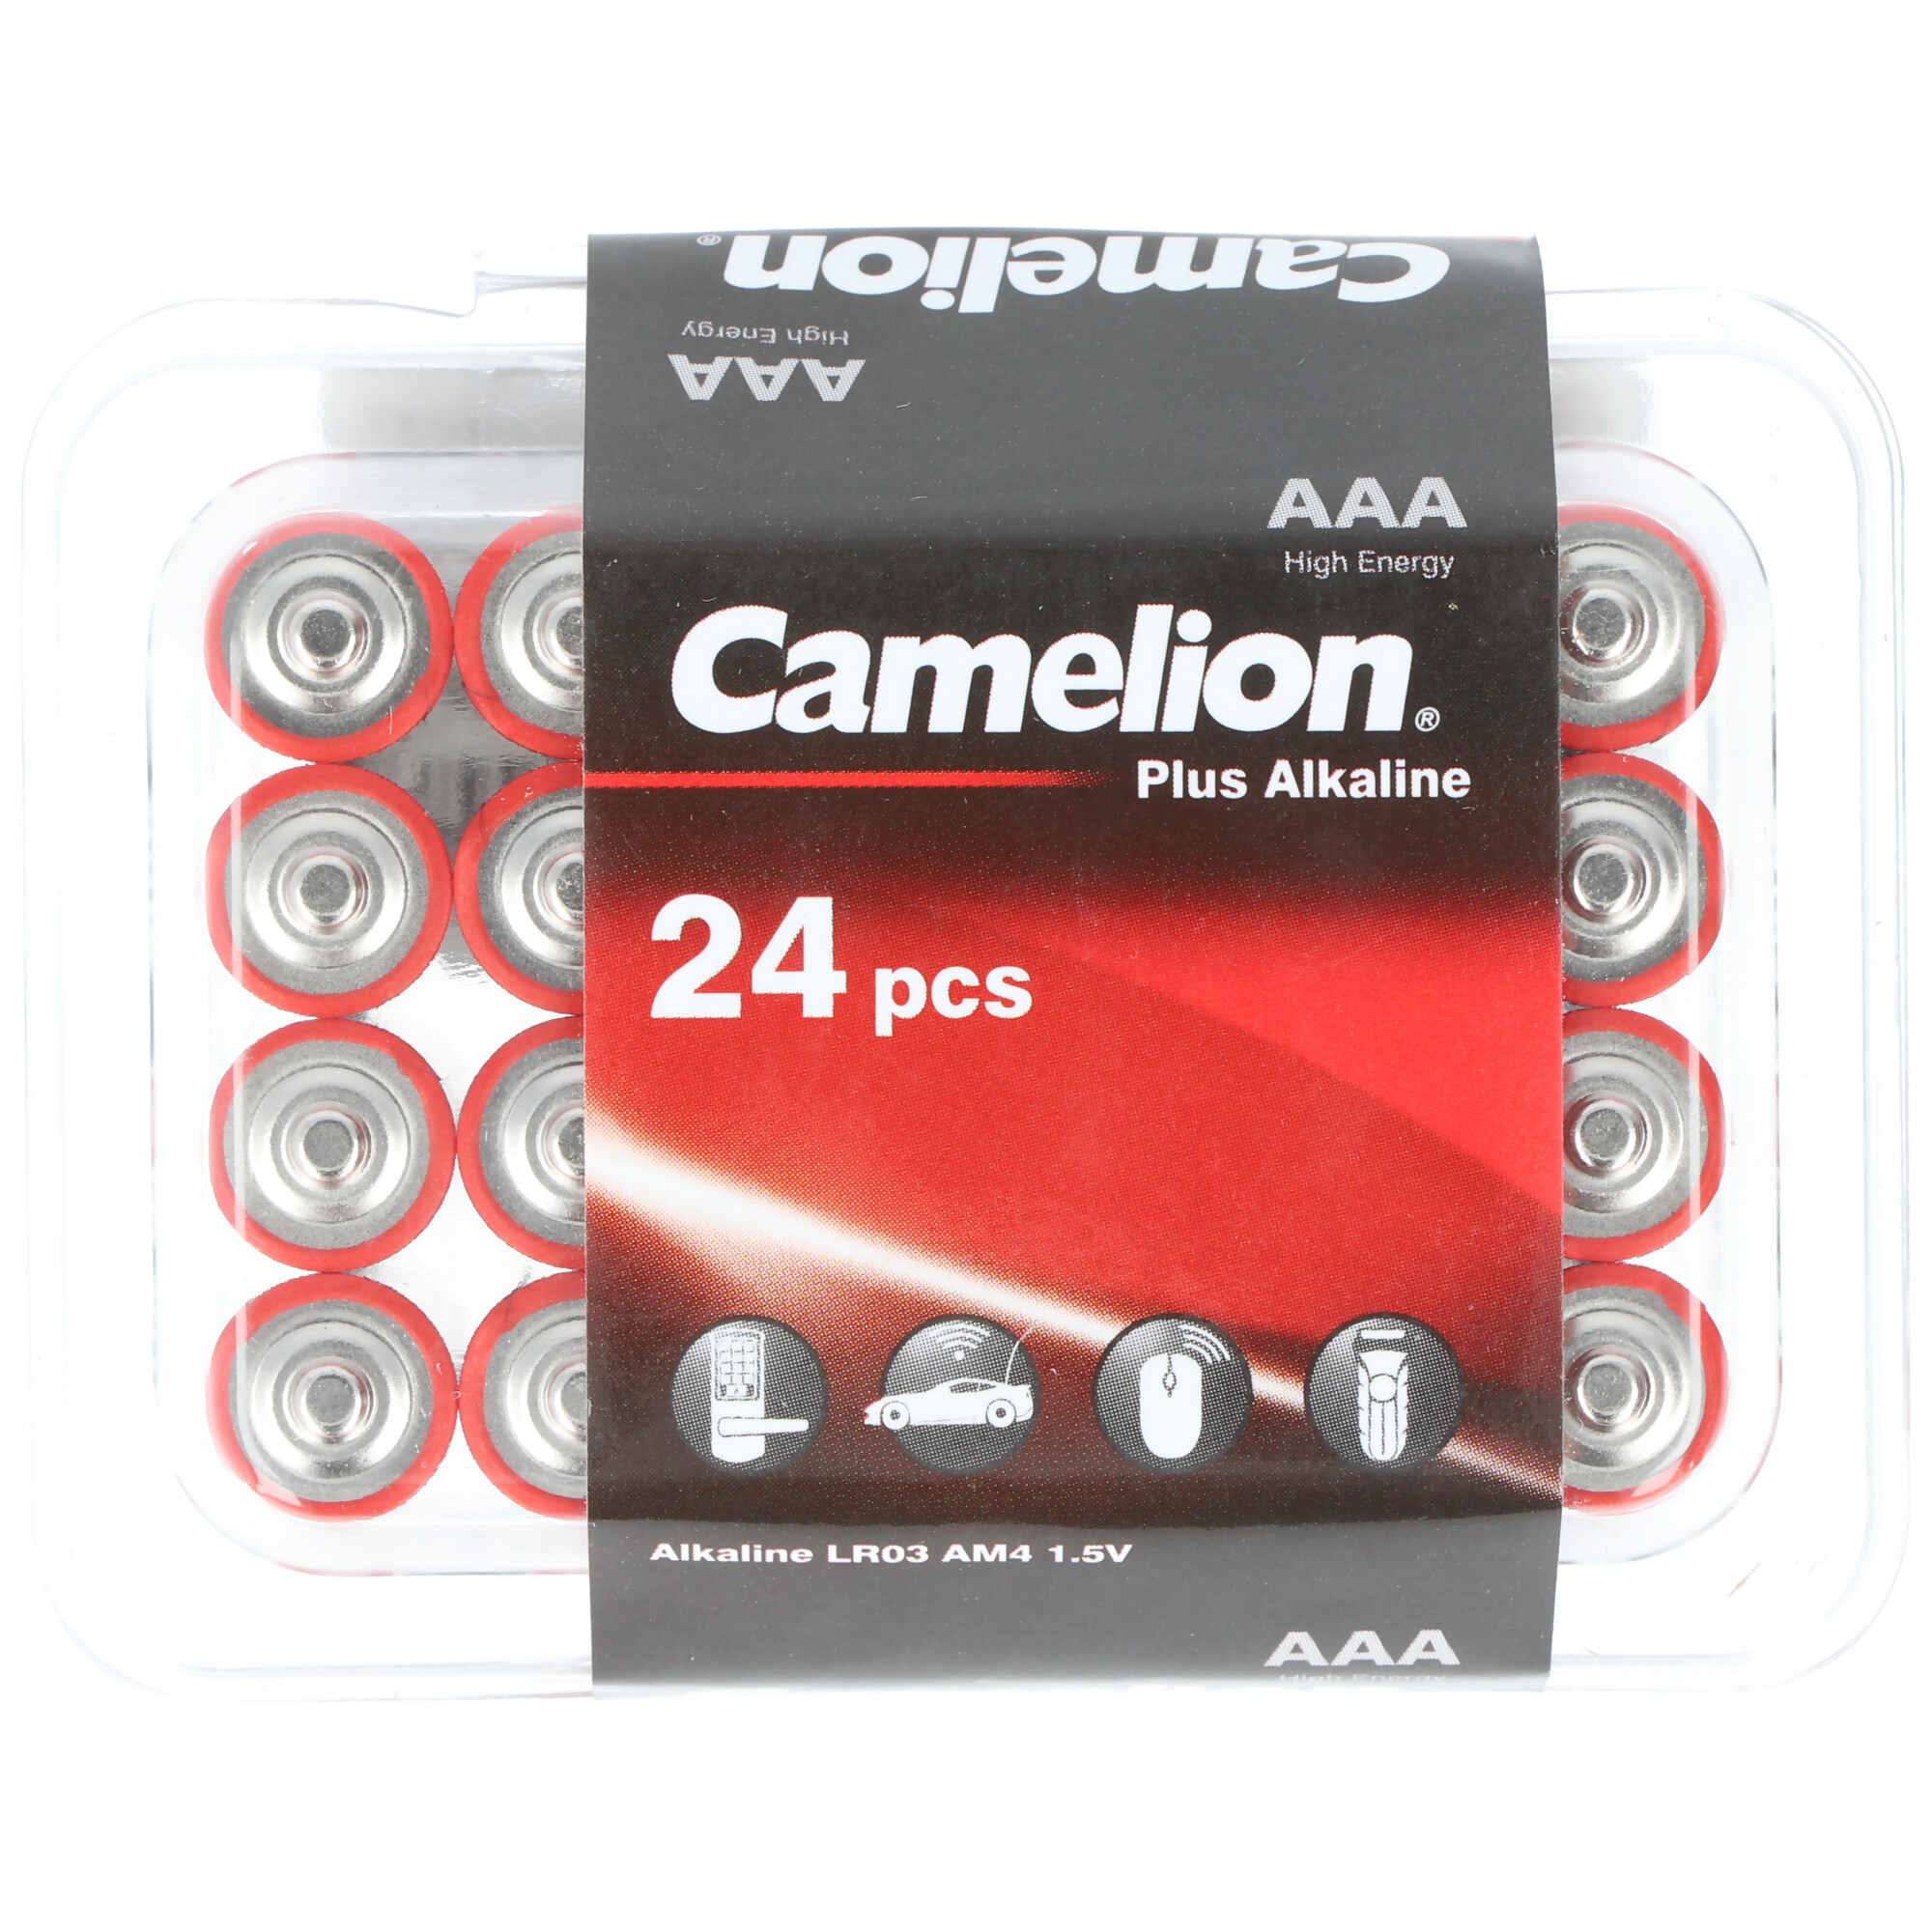 Camelion Plus Alkaline AAA Batterien, 24 Stück in praktischer Aufbewahrungsbox